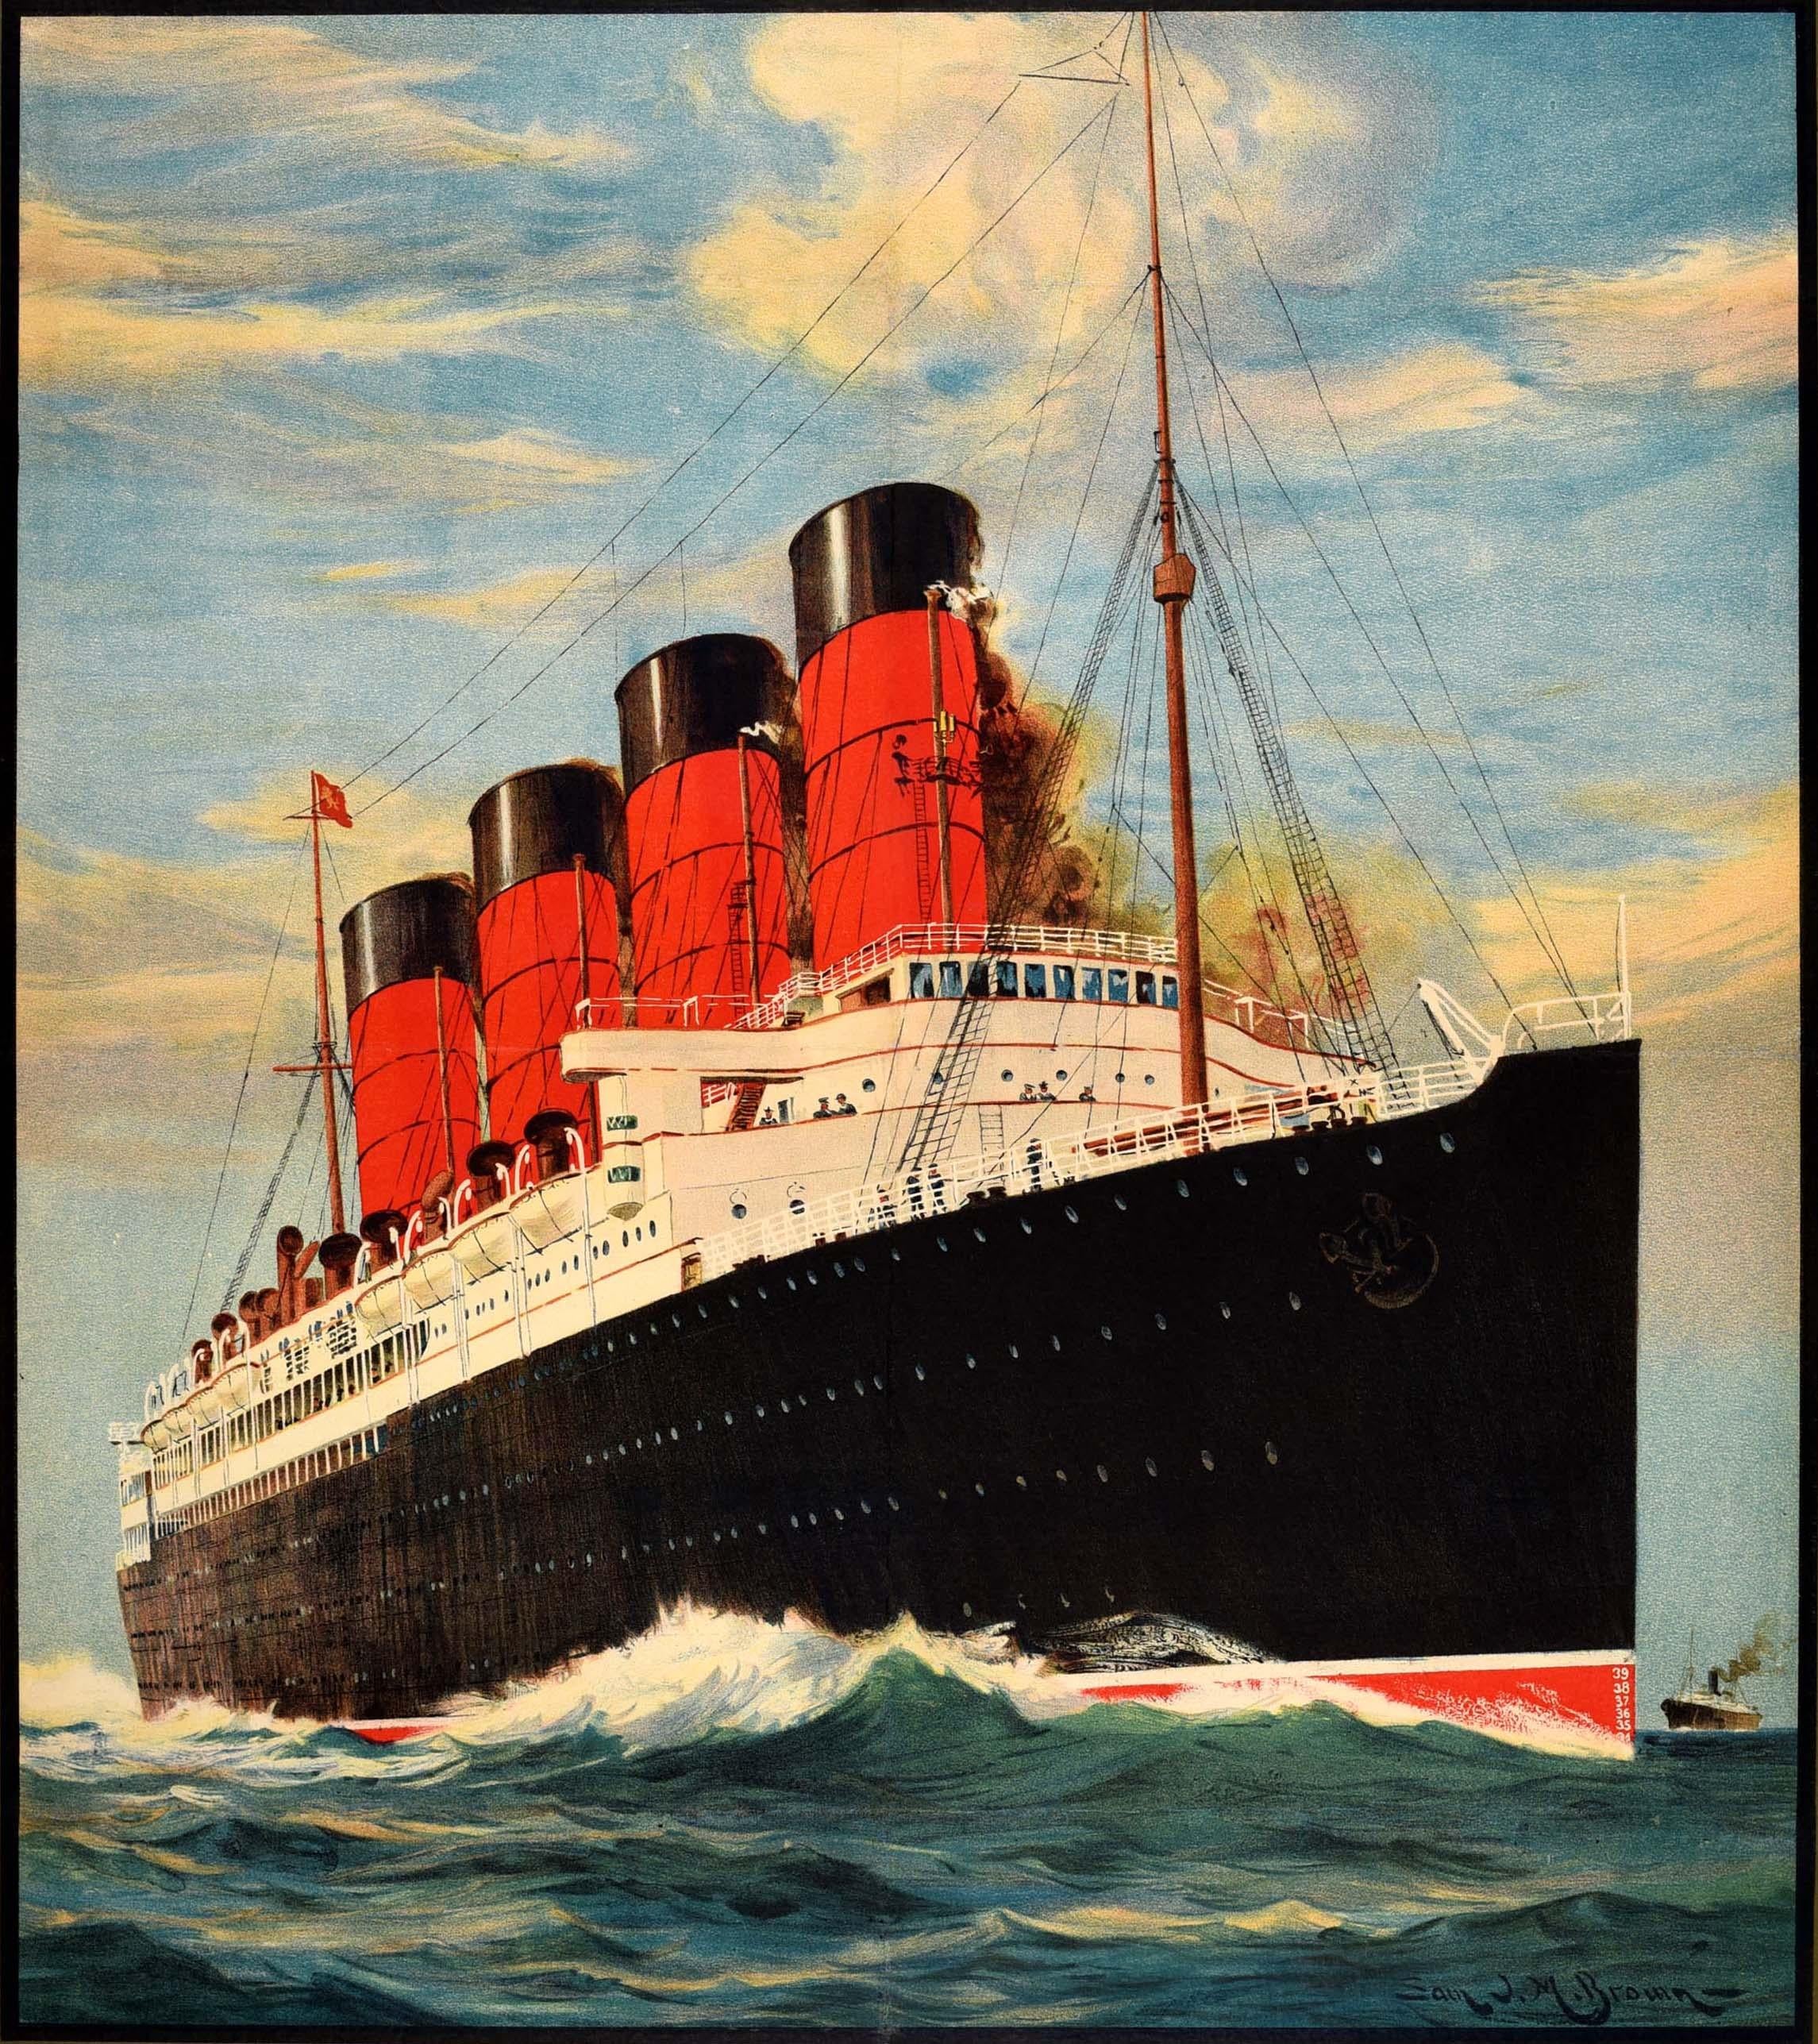 Affiche publicitaire originale pour la Cunard Line Europe-America, comportant une superbe illustration de Samuel John Milton Brown (1873-1965) d'un paquebot de croisière de la Cunard Line à quatre cheminées naviguant sur l'océan, avec un autre